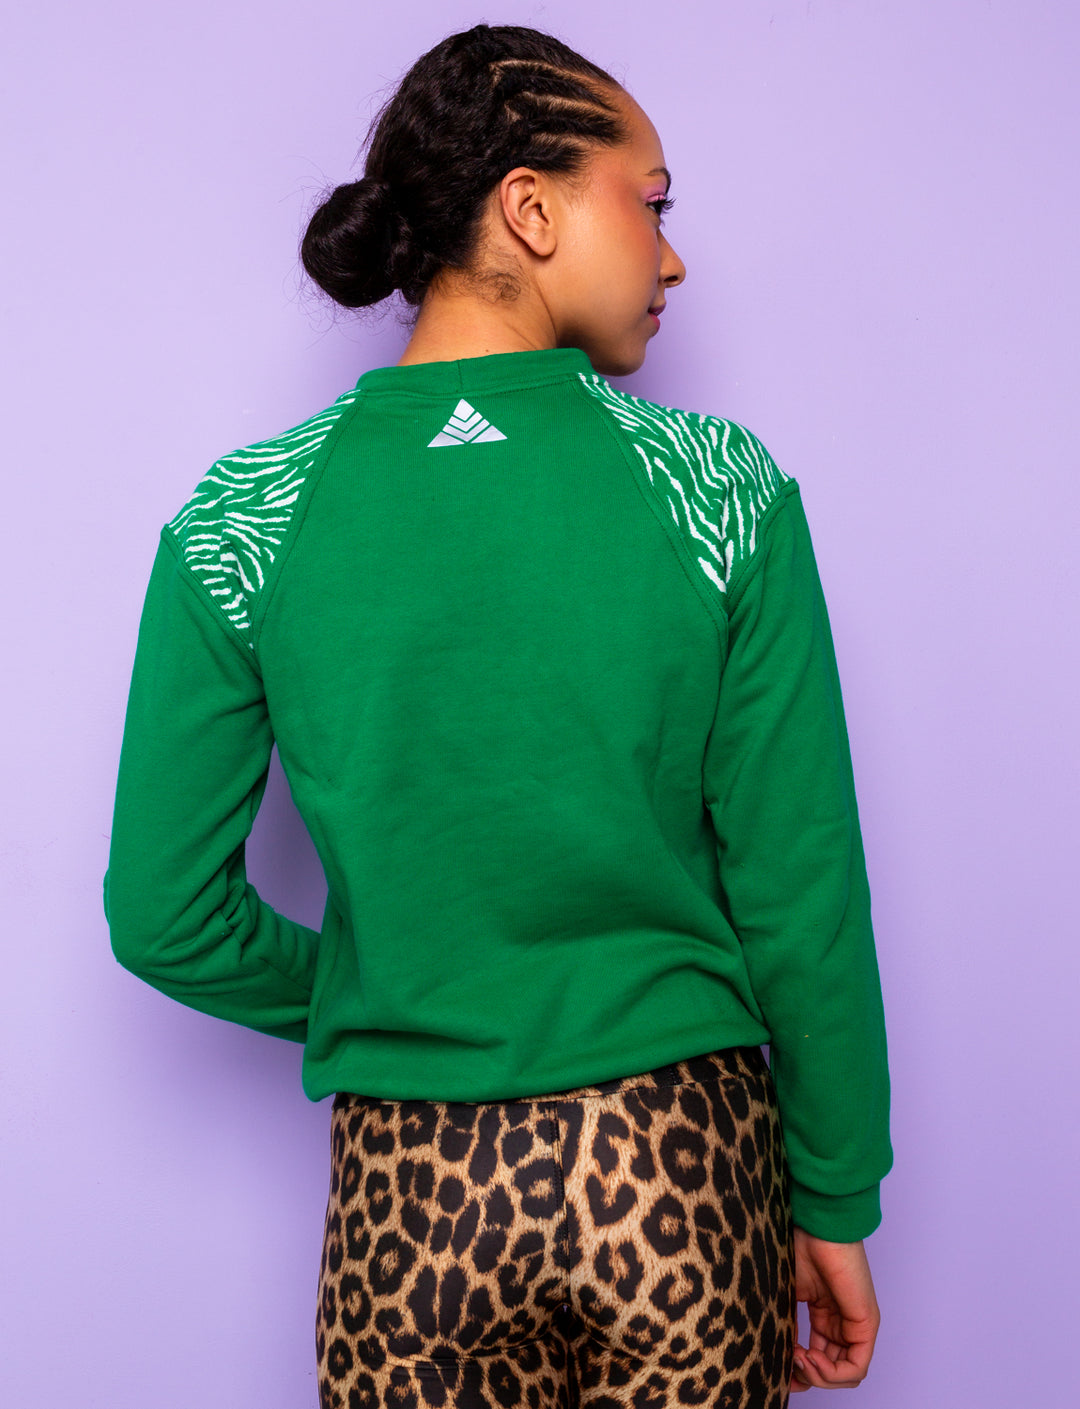 back view of Green sweatshirt with zebra print shoulders